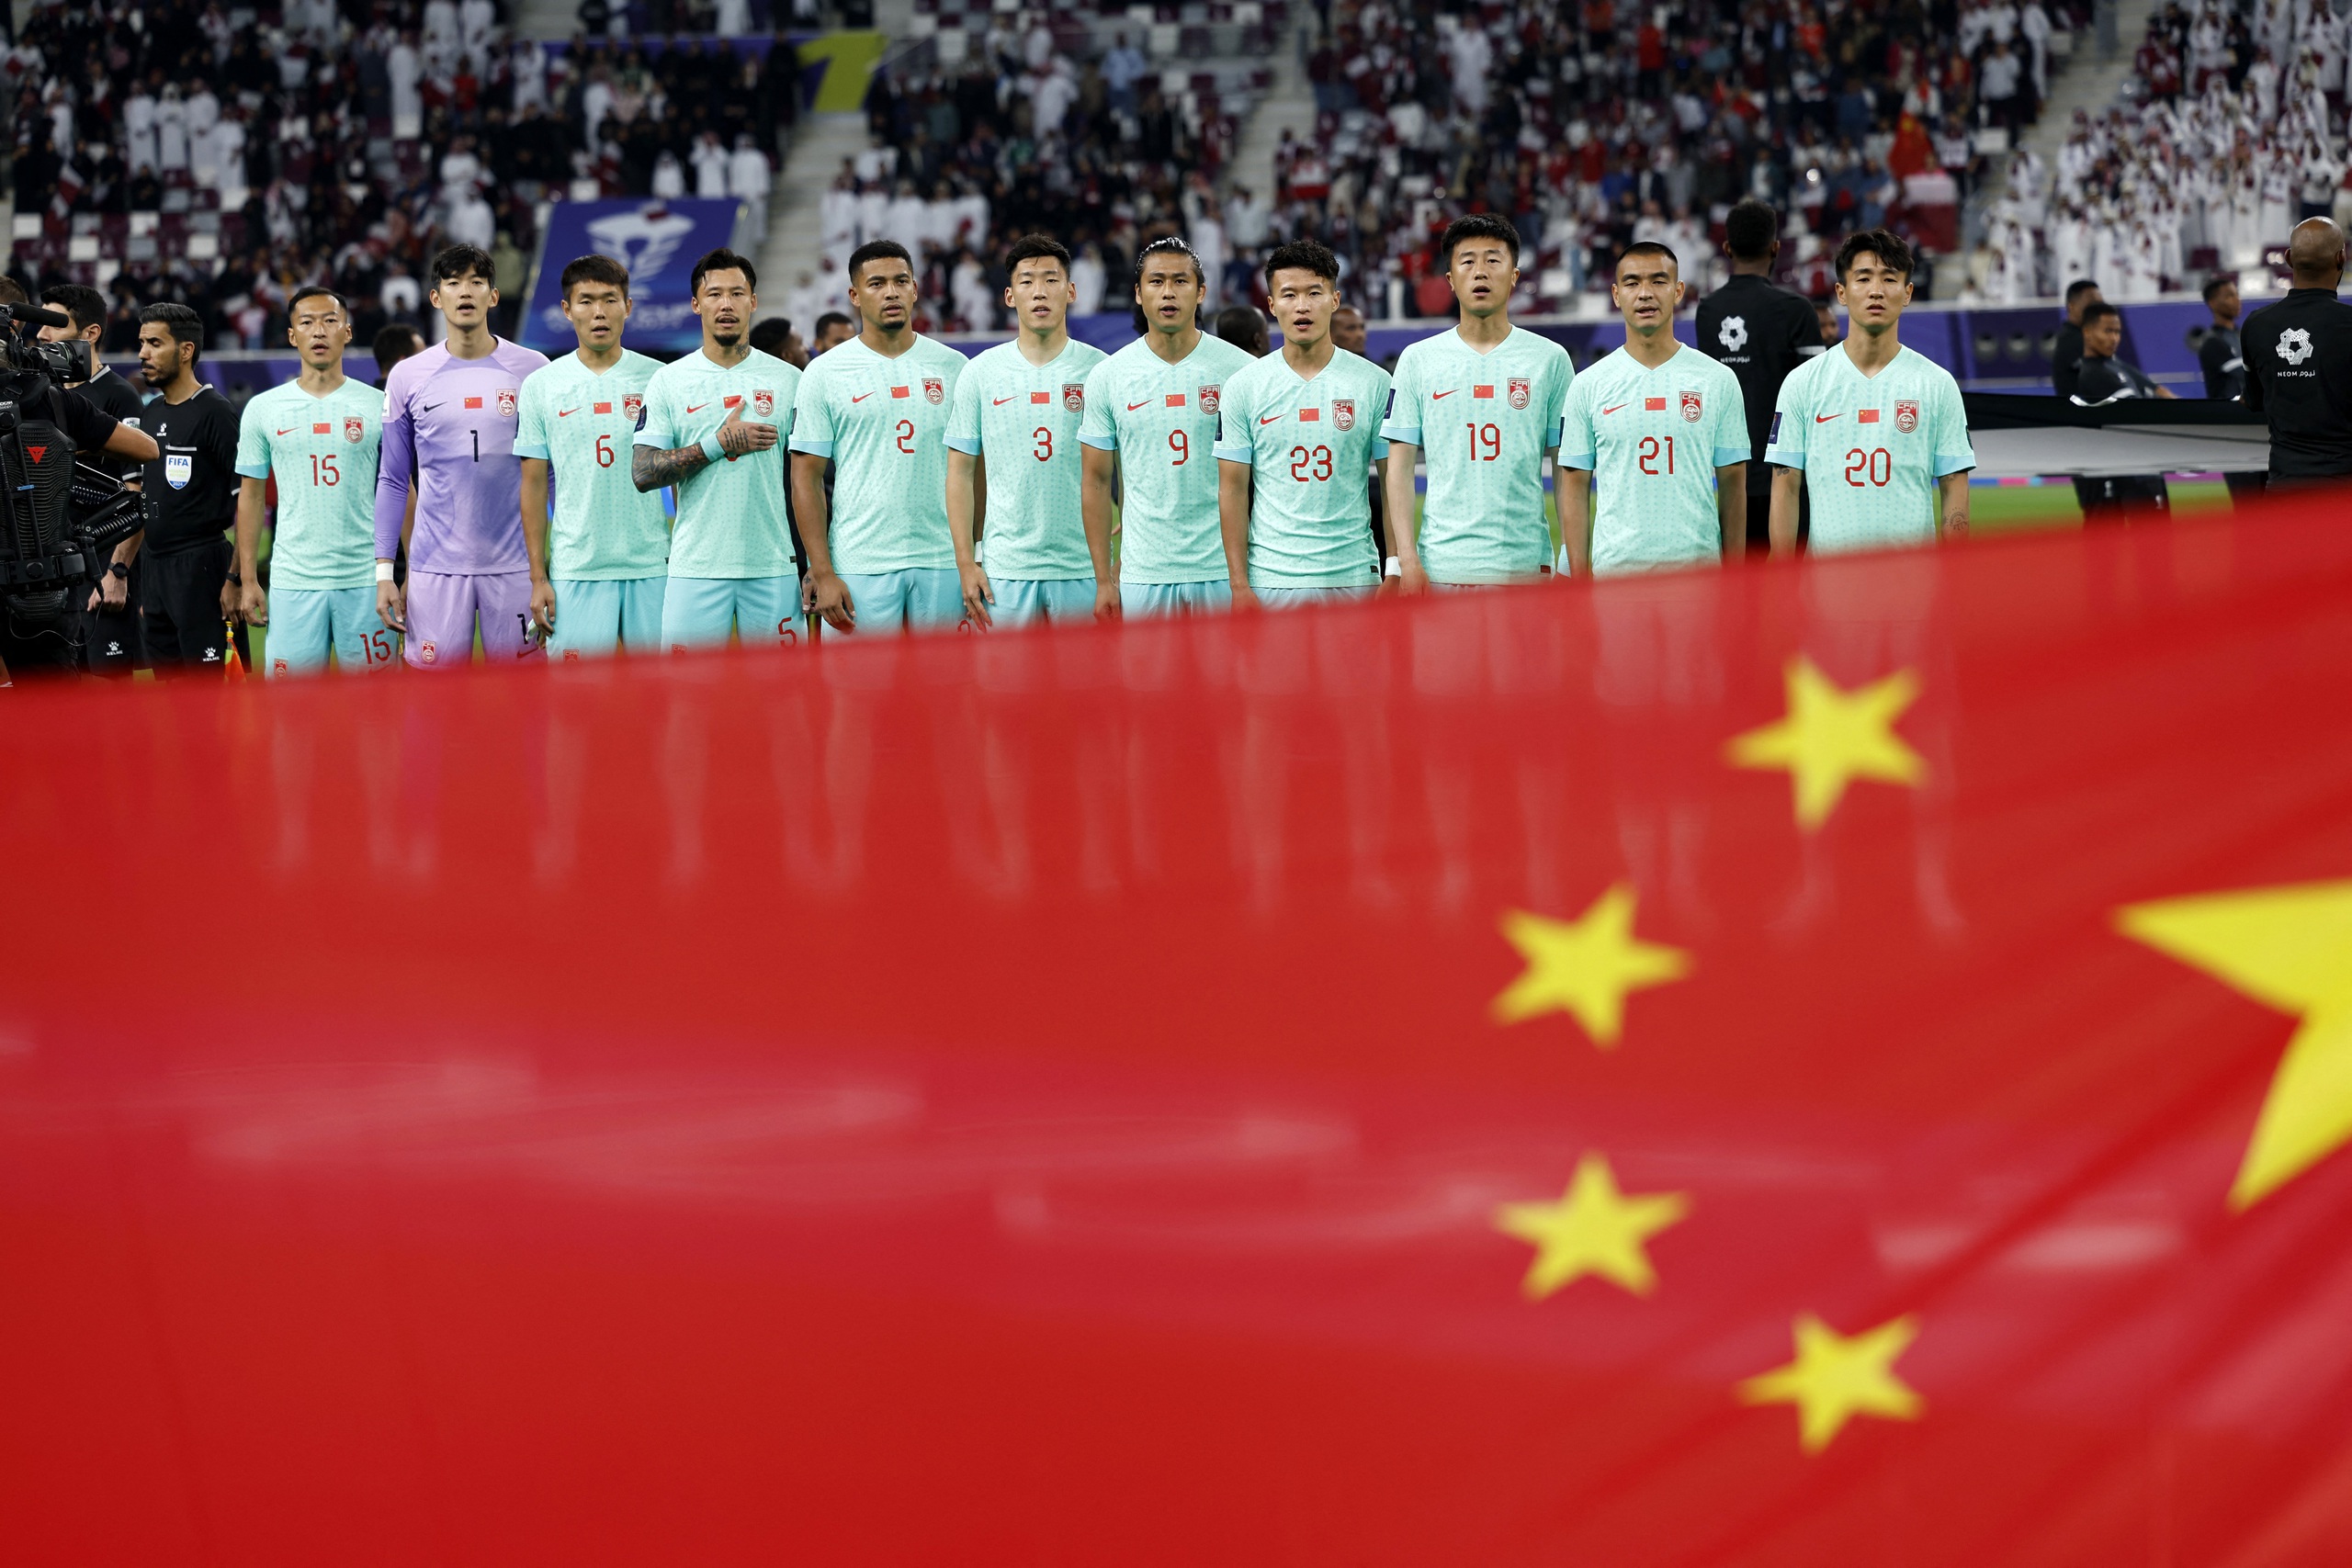 Thua tối thiểu Qatar, đội tuyển Trung Quốc gần như bị loại khỏi Asian Cup - Ảnh 1.